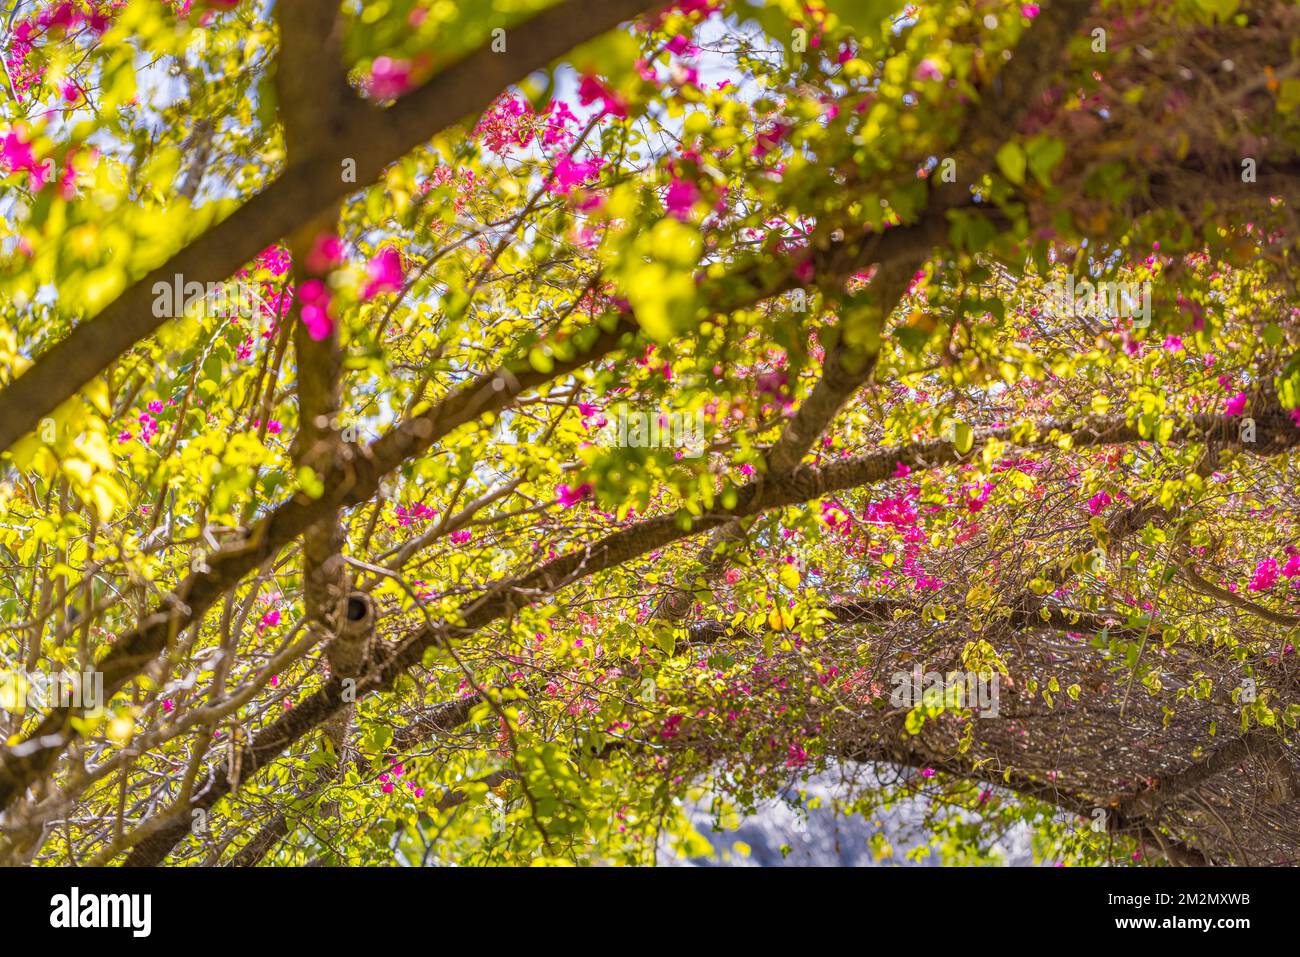 Abstrakte Nahaufnahme von blühenden Bougainvillea-Blüten, grünen Blättern und warmem Sonnenlicht. Blumenbogen im Garten, idyllische künstlerische Aussicht, Landschaftsformat Stockfoto